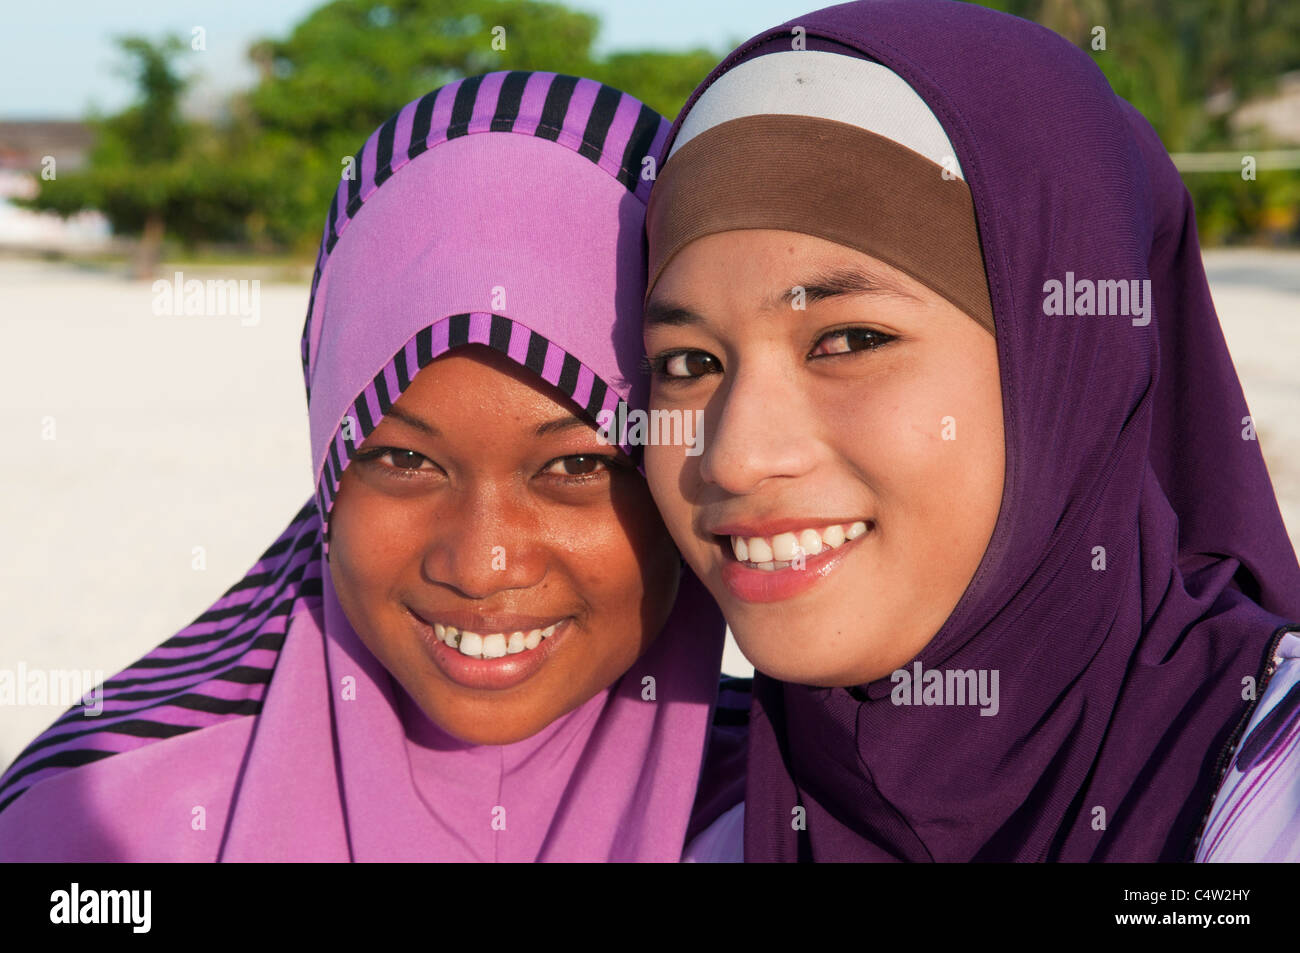 muslim-girls-with-big-smiles-on-mabul-island-in-borneo-malaysia-C4W2HY.jpg